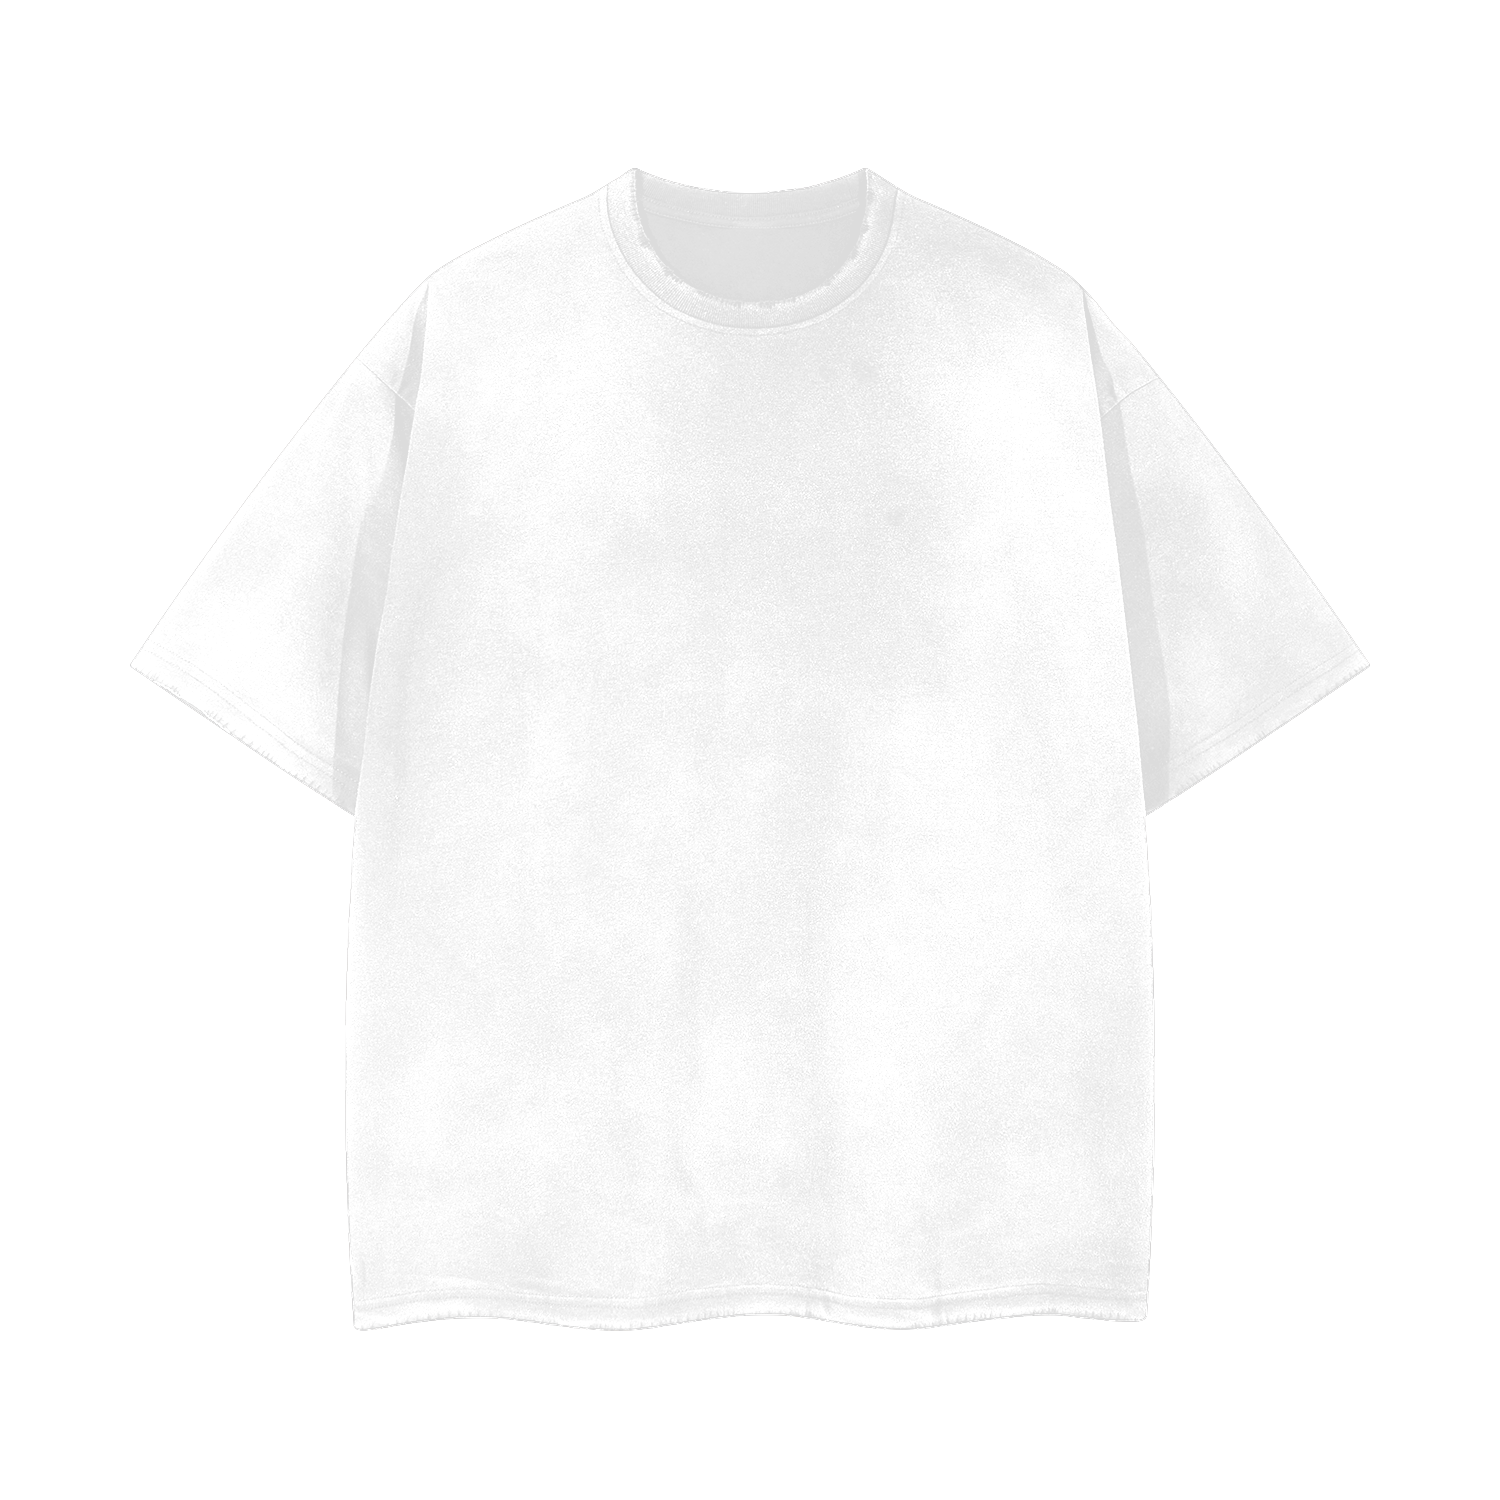 Taknemmelig redaktionelle smerte Streetwear Unisex Washed Effect Vintage T-Shirt - Print On Demand | HugePOD